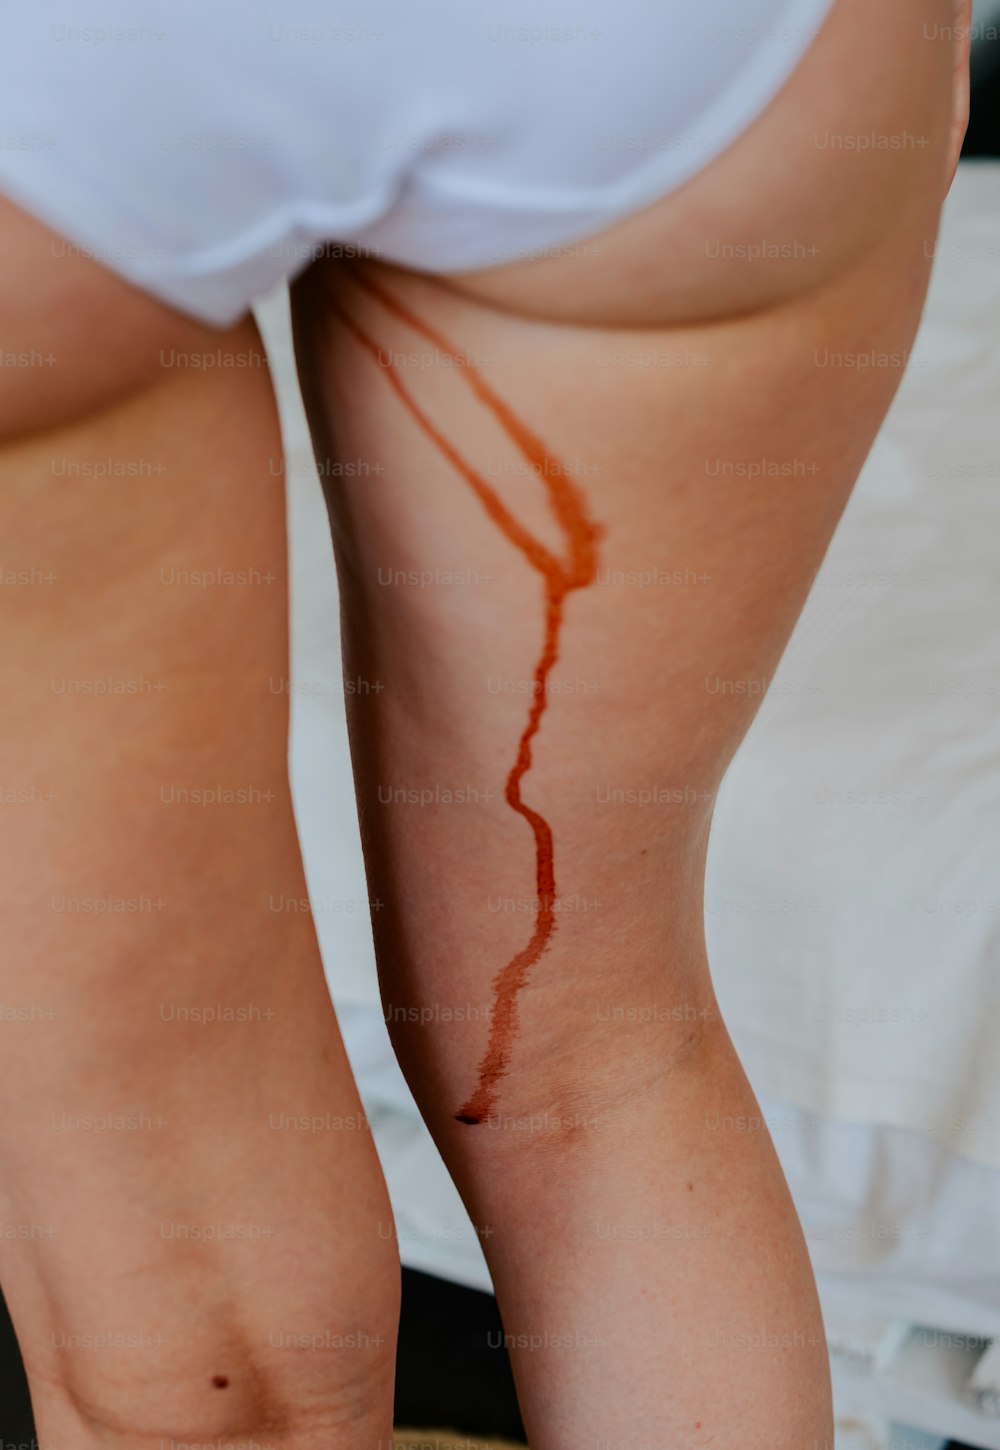 750+ Menstruation Pictures  Download Free Images on Unsplash